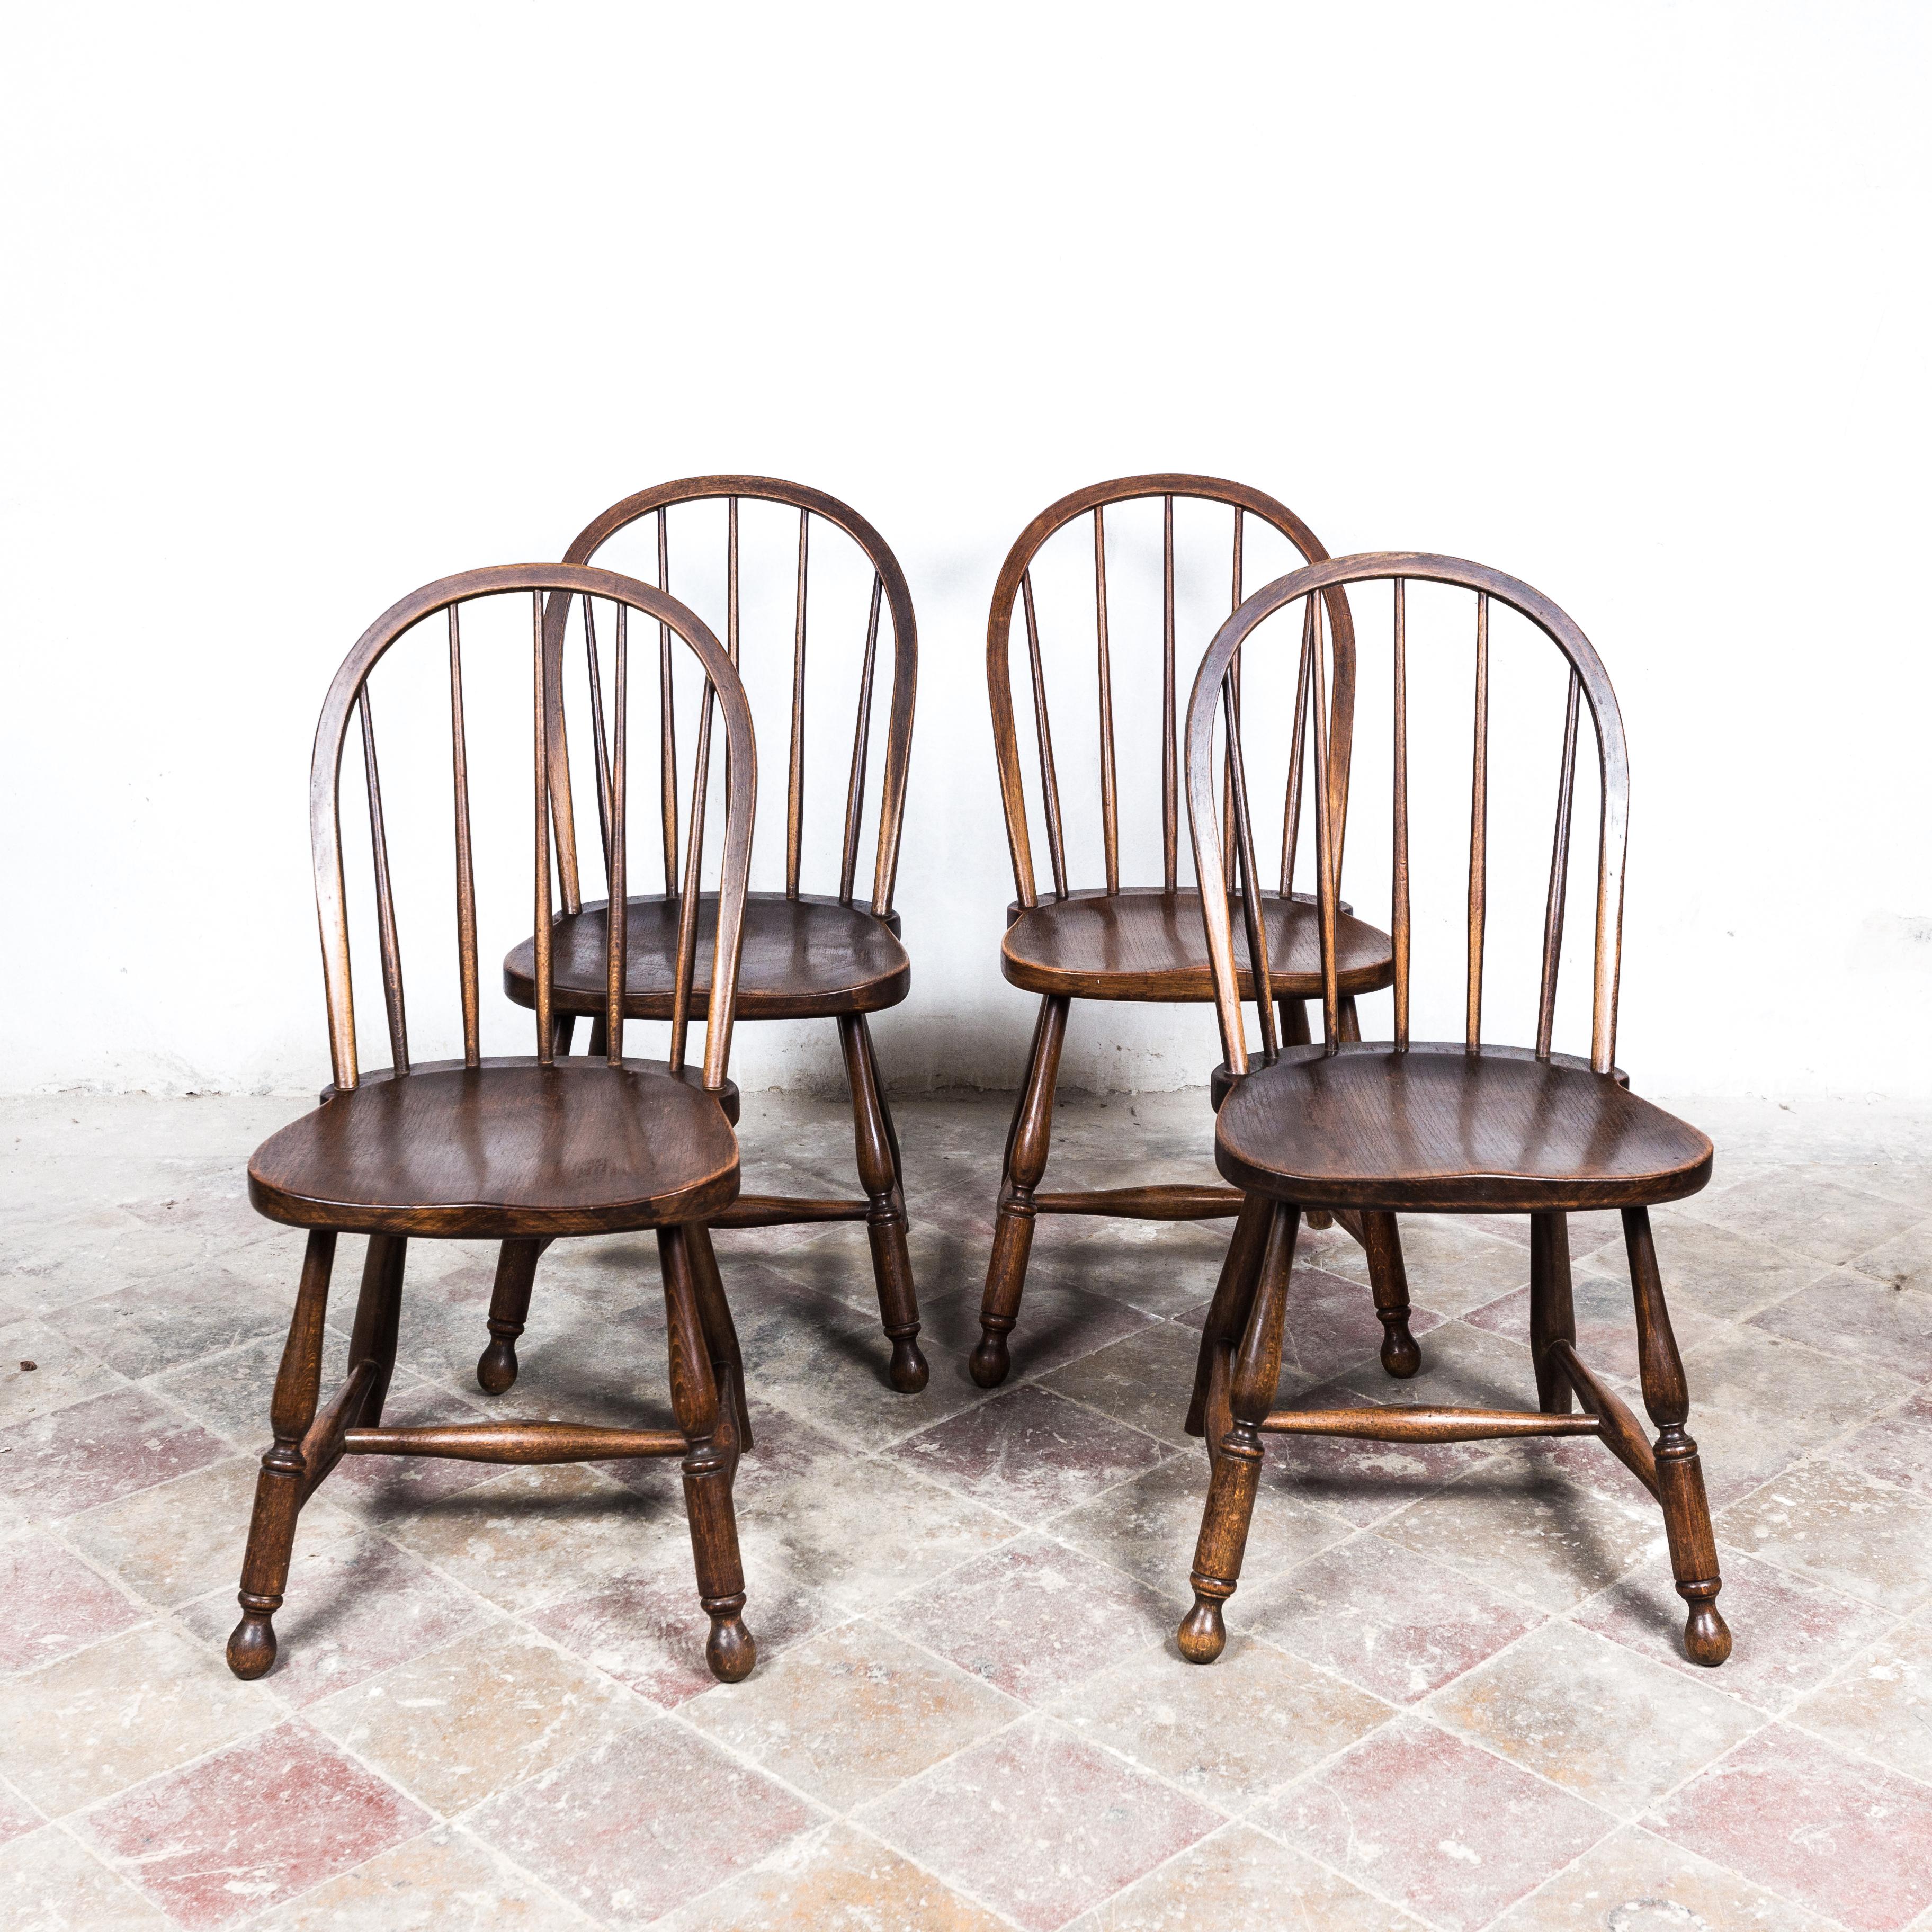 Ensemble de chaises extrêmement rare conçu par Josef Frank. Ce type de chaises a été utilisé par Adolf Loos pour la cuisine de la célèbre Villa Müller à Prague. Bois de hêtre massif teinté pour imiter la mahagonie. En très bon état d'origine. Avec